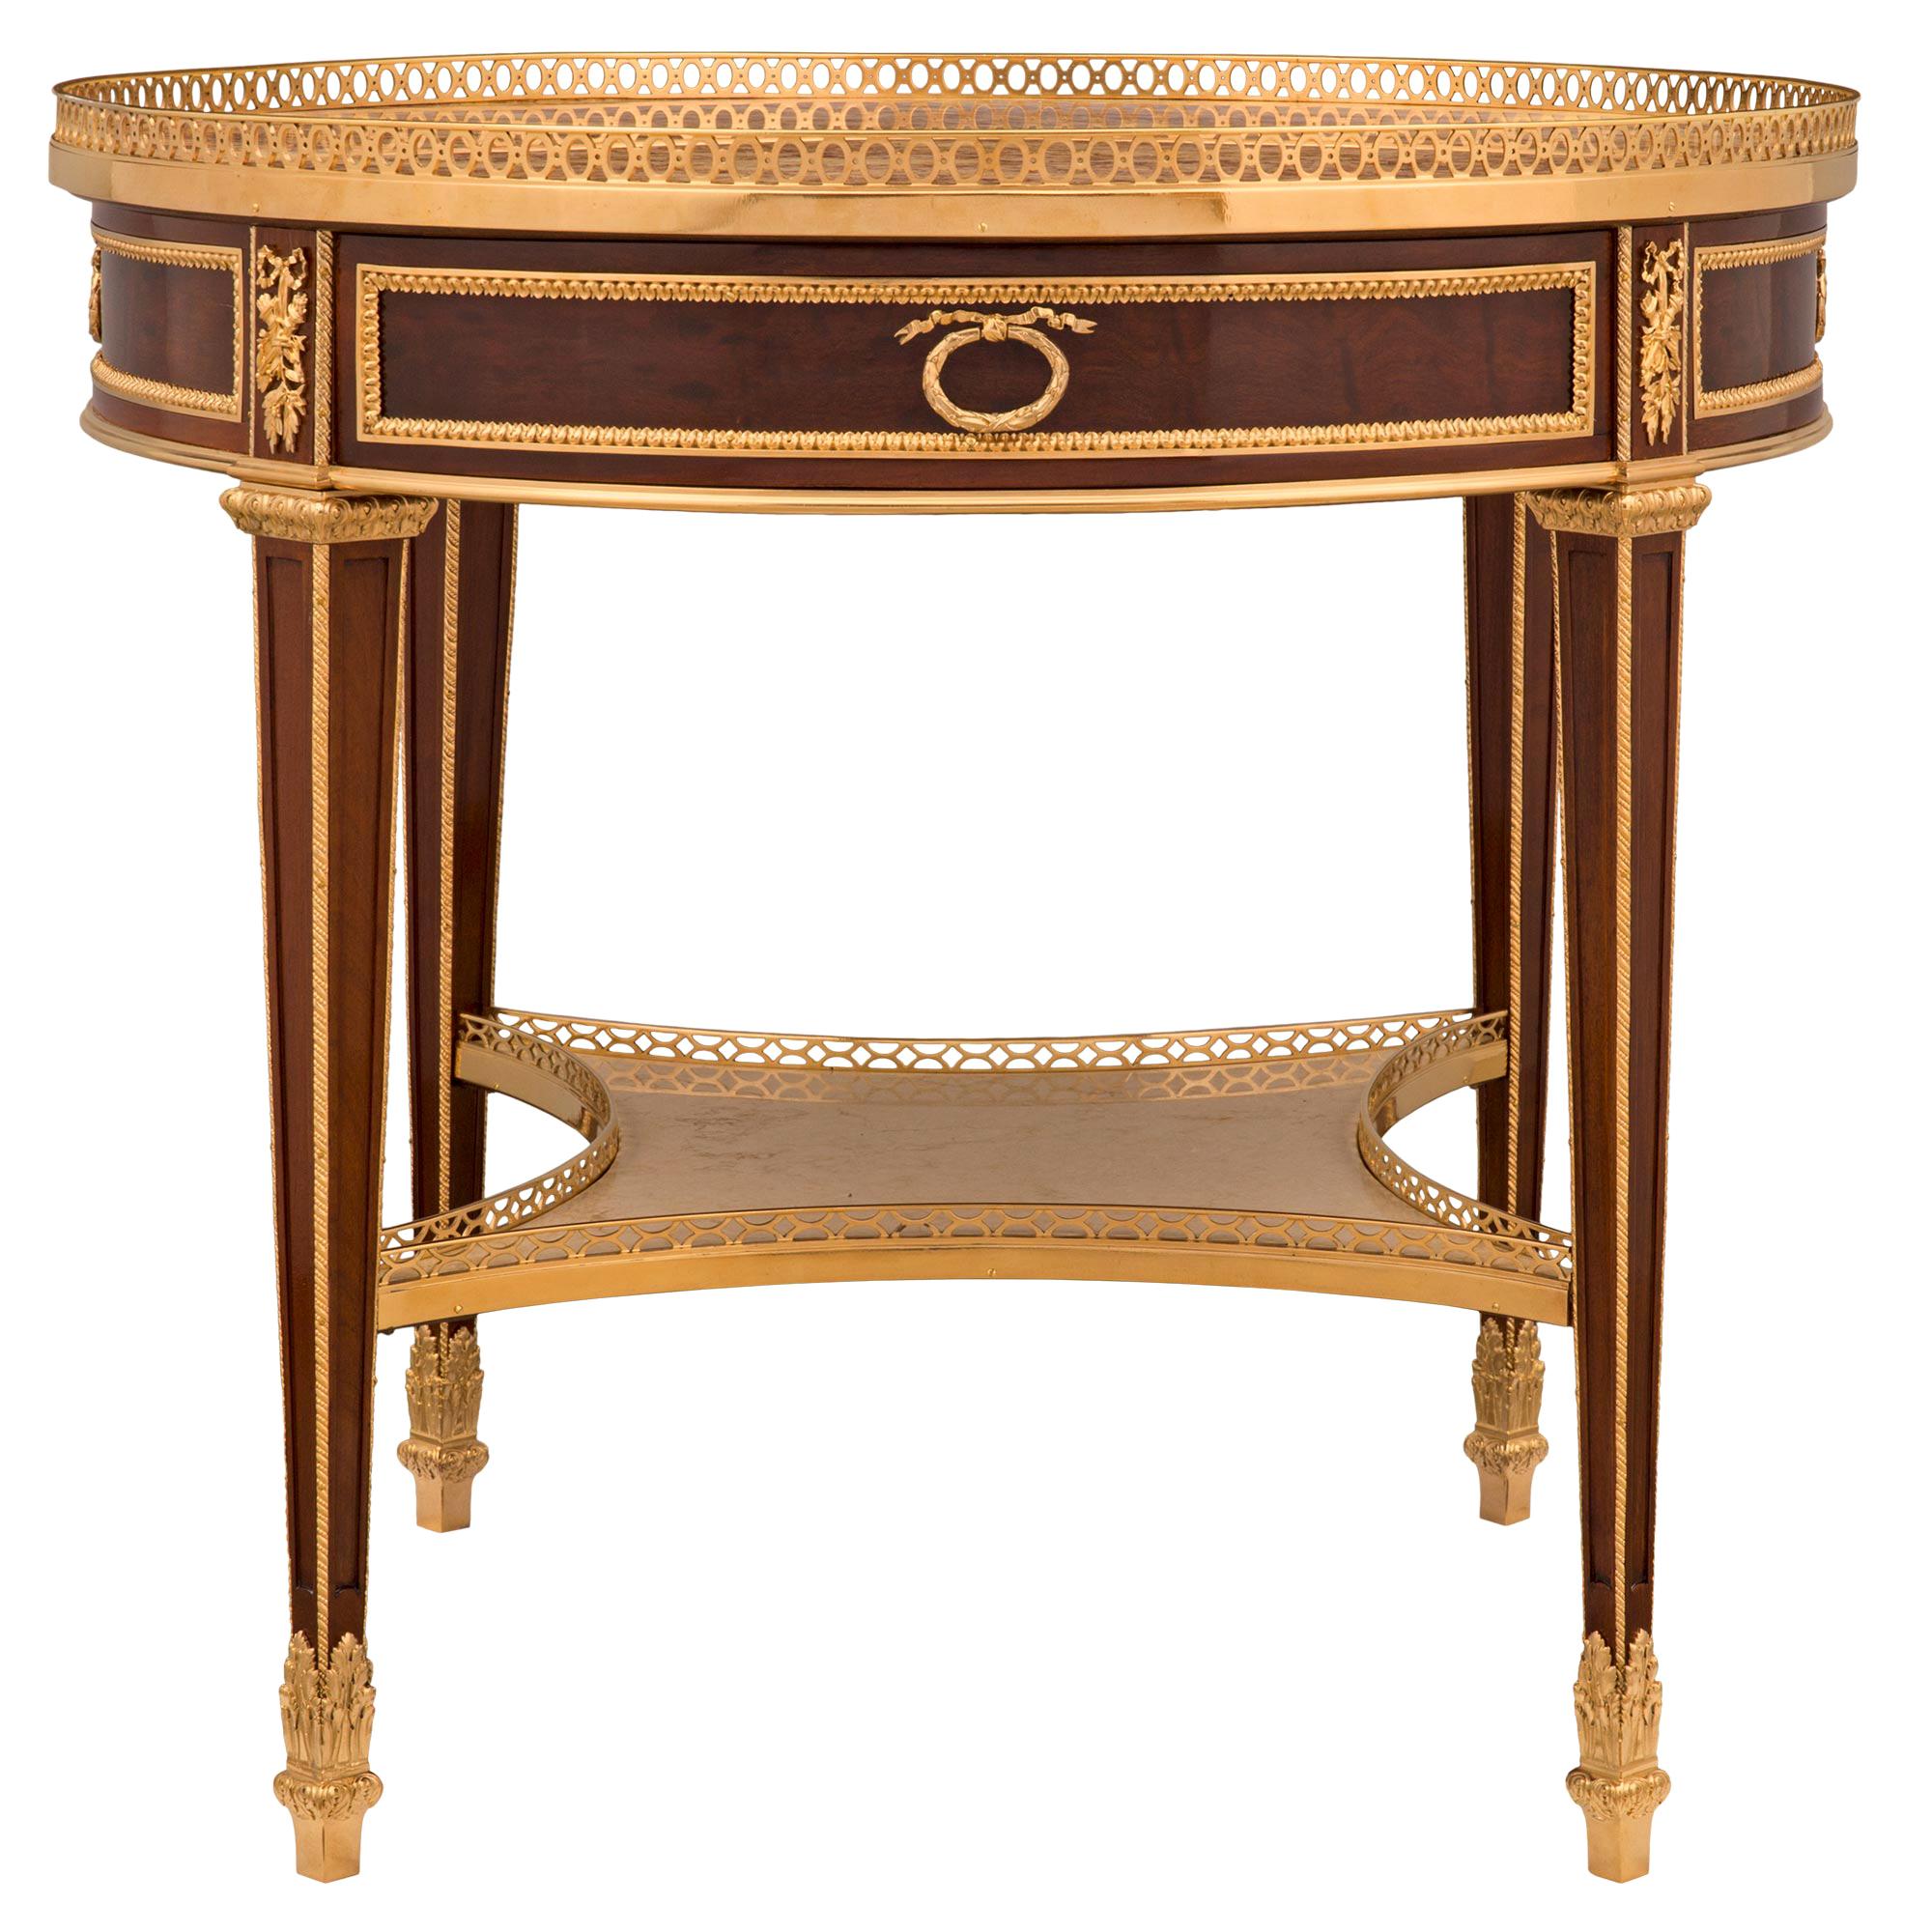 Table d'appoint française du 19ème siècle de style Louis XVI en acajou, bronze doré et marbre